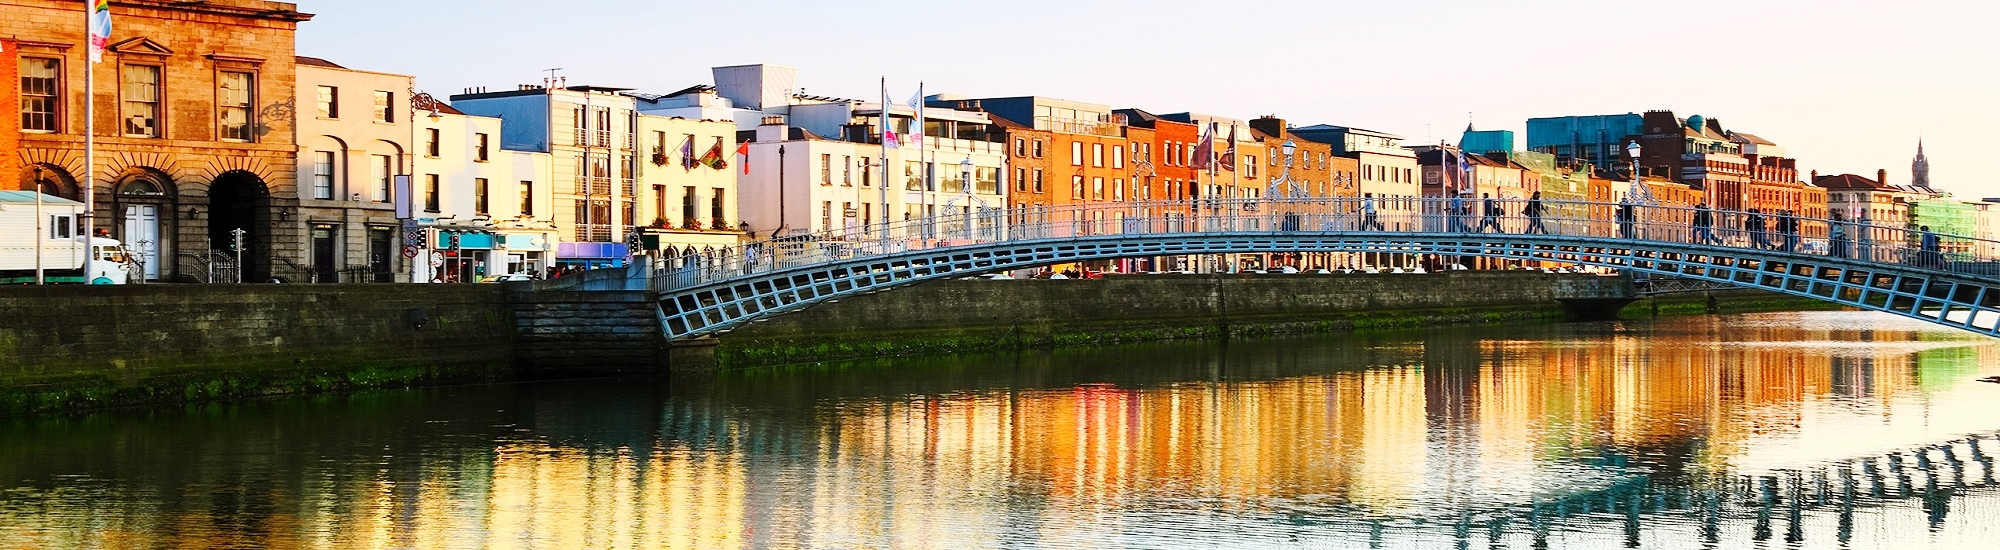 Summer holiday destination slider image Dublin